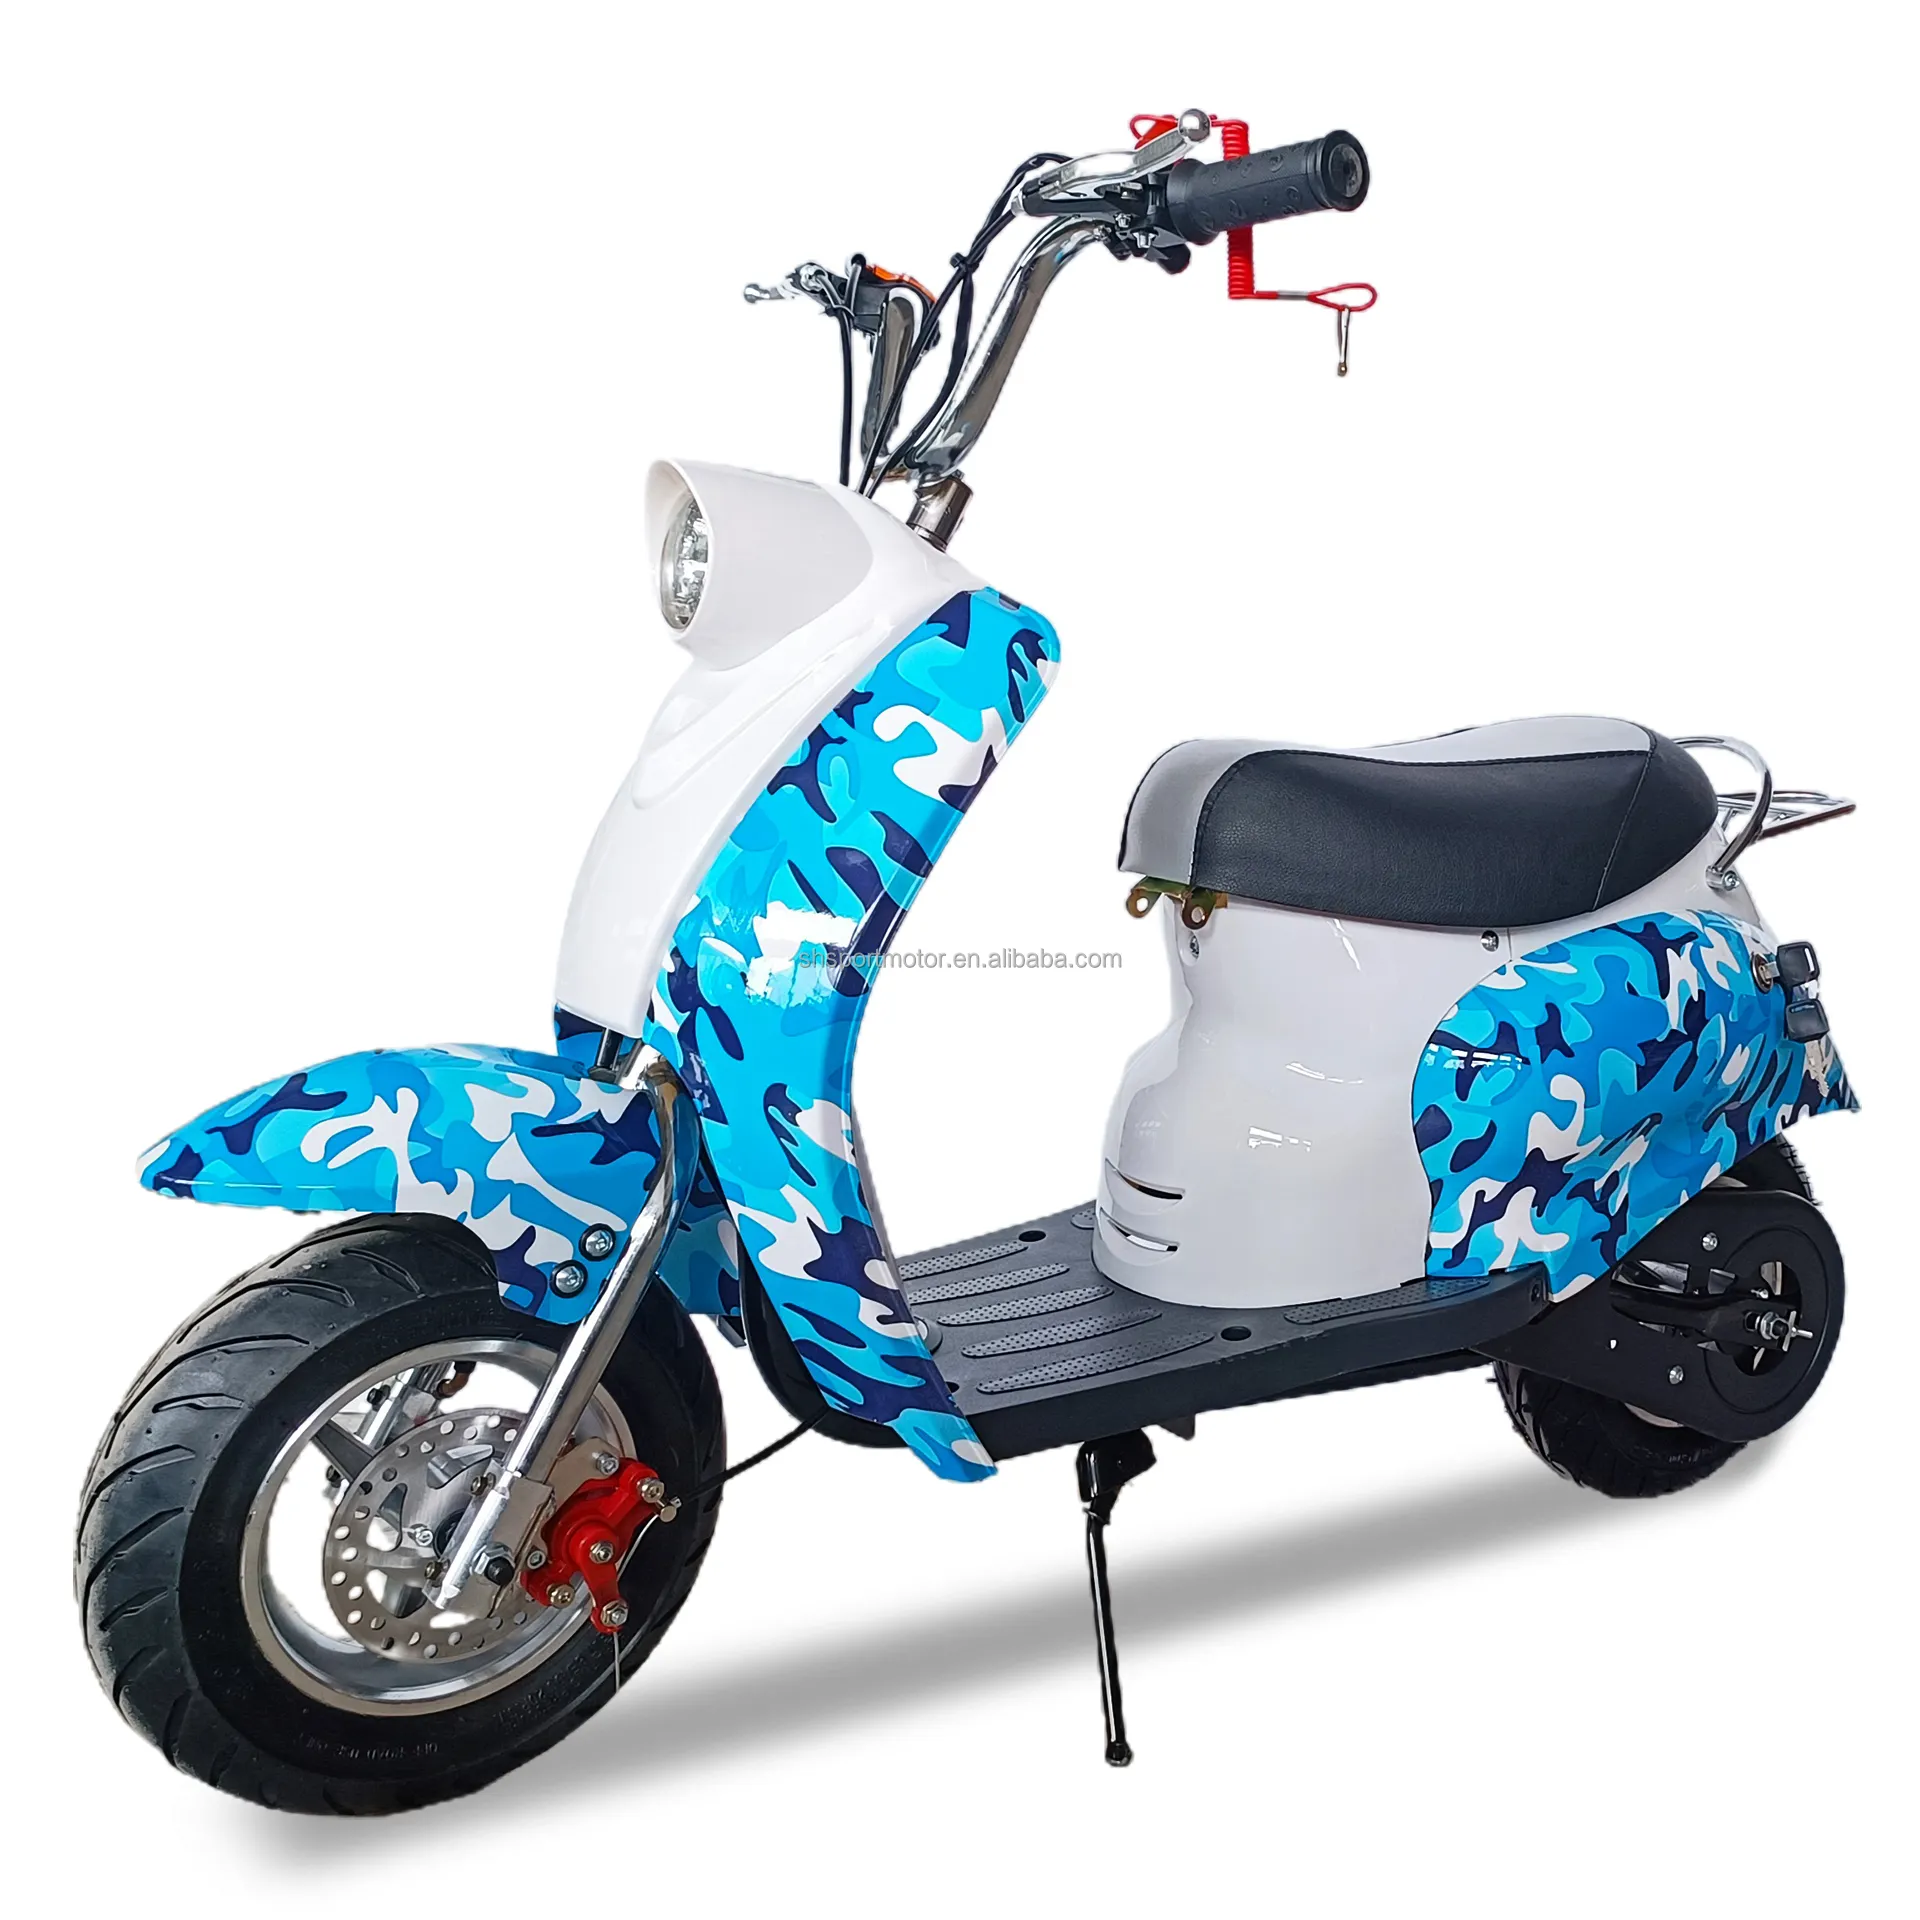 Venta caliente 49cc niños scooter motor Moto 2 ruedas bicicleta